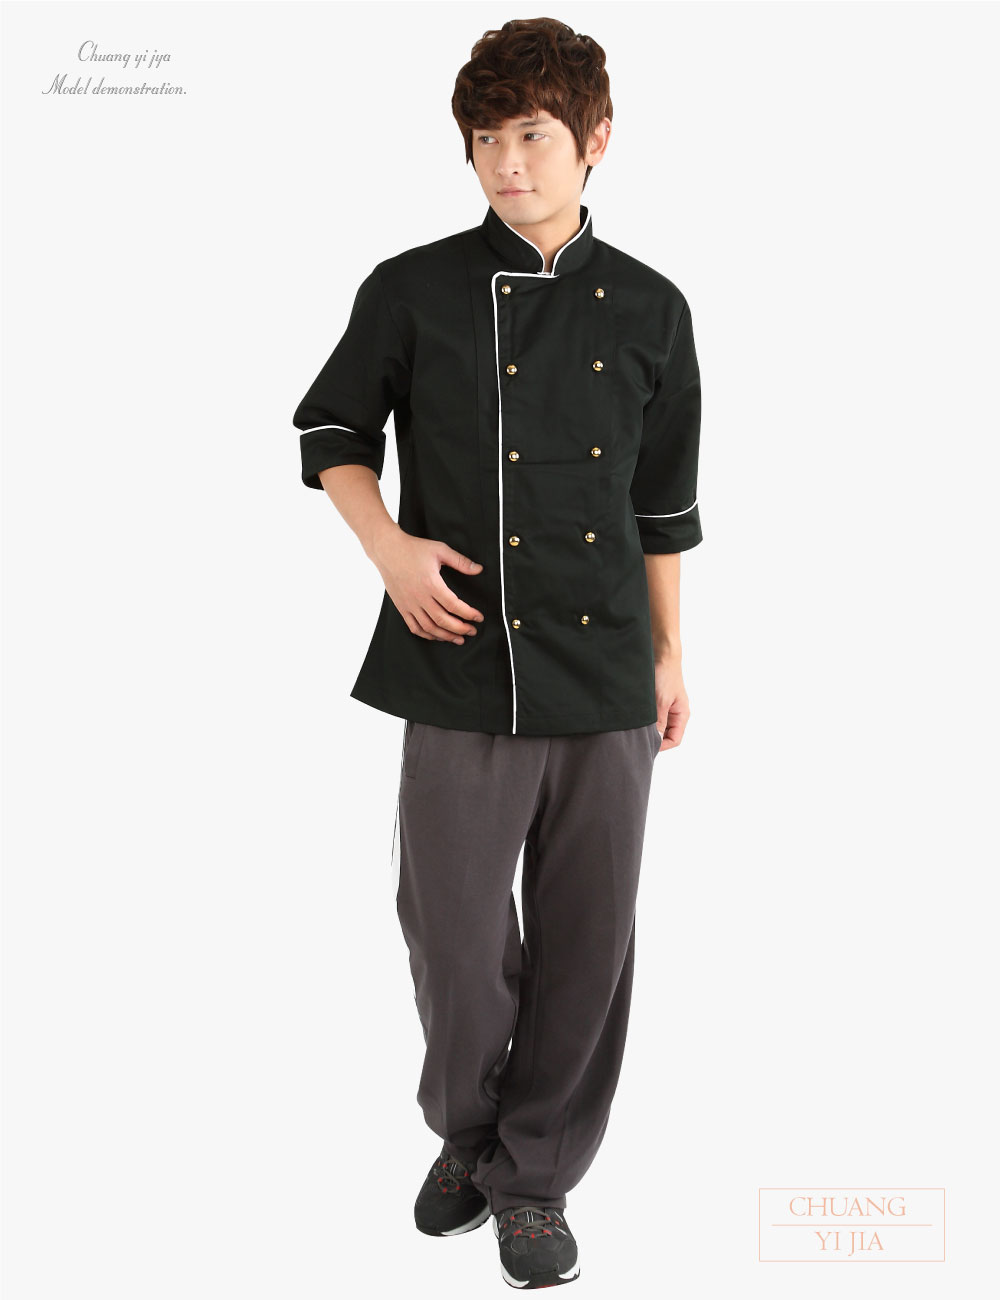 創e家團體服-廚師服 雙排金釦 黑出芽白-正面